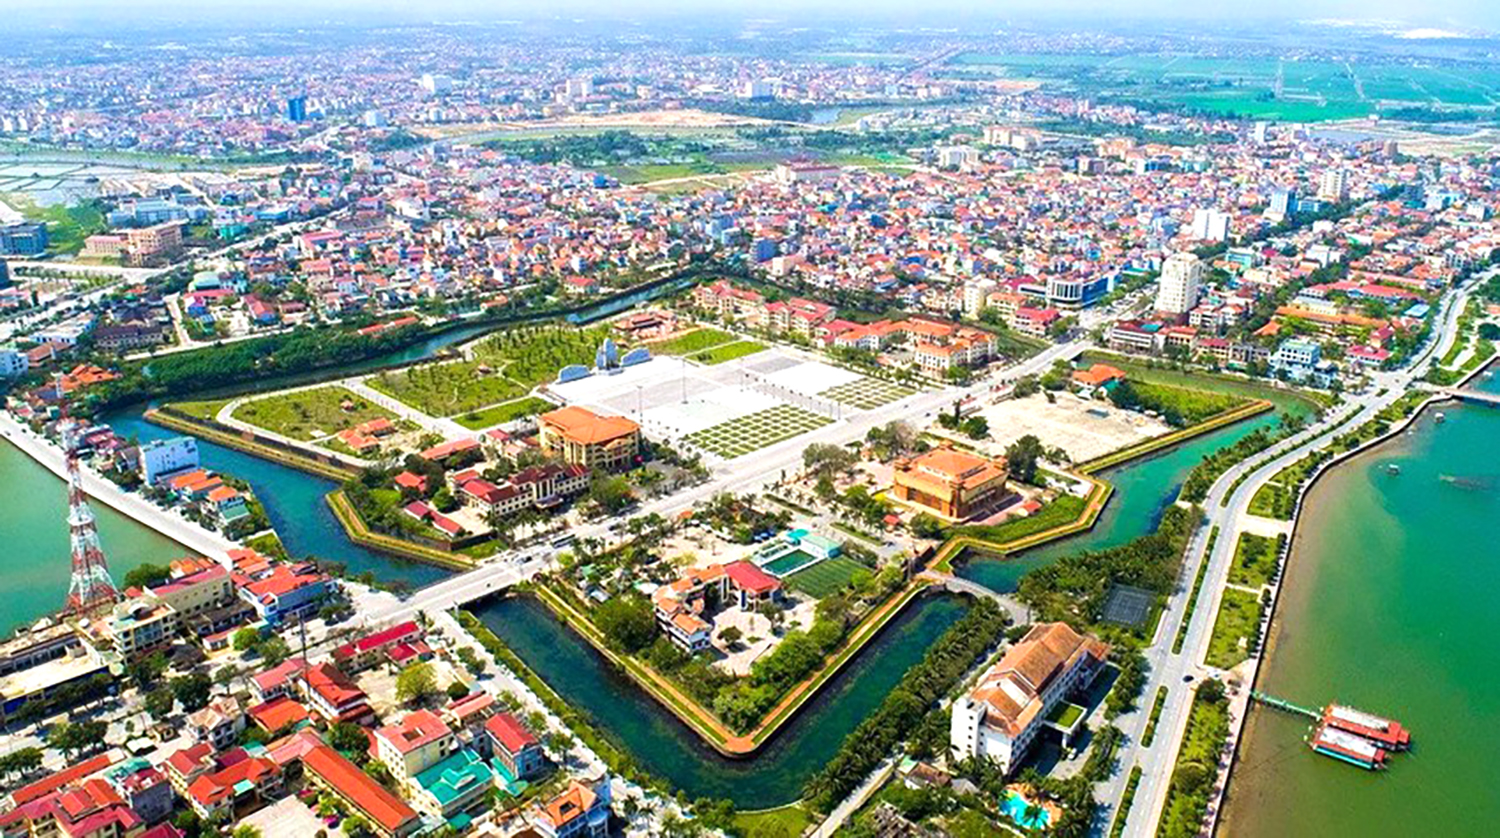 Kế hoạch tổ chức đợt sinh hoạt chính trị nhân kỷ niệm 420 năm hình thành tỉnh Quảng Bình